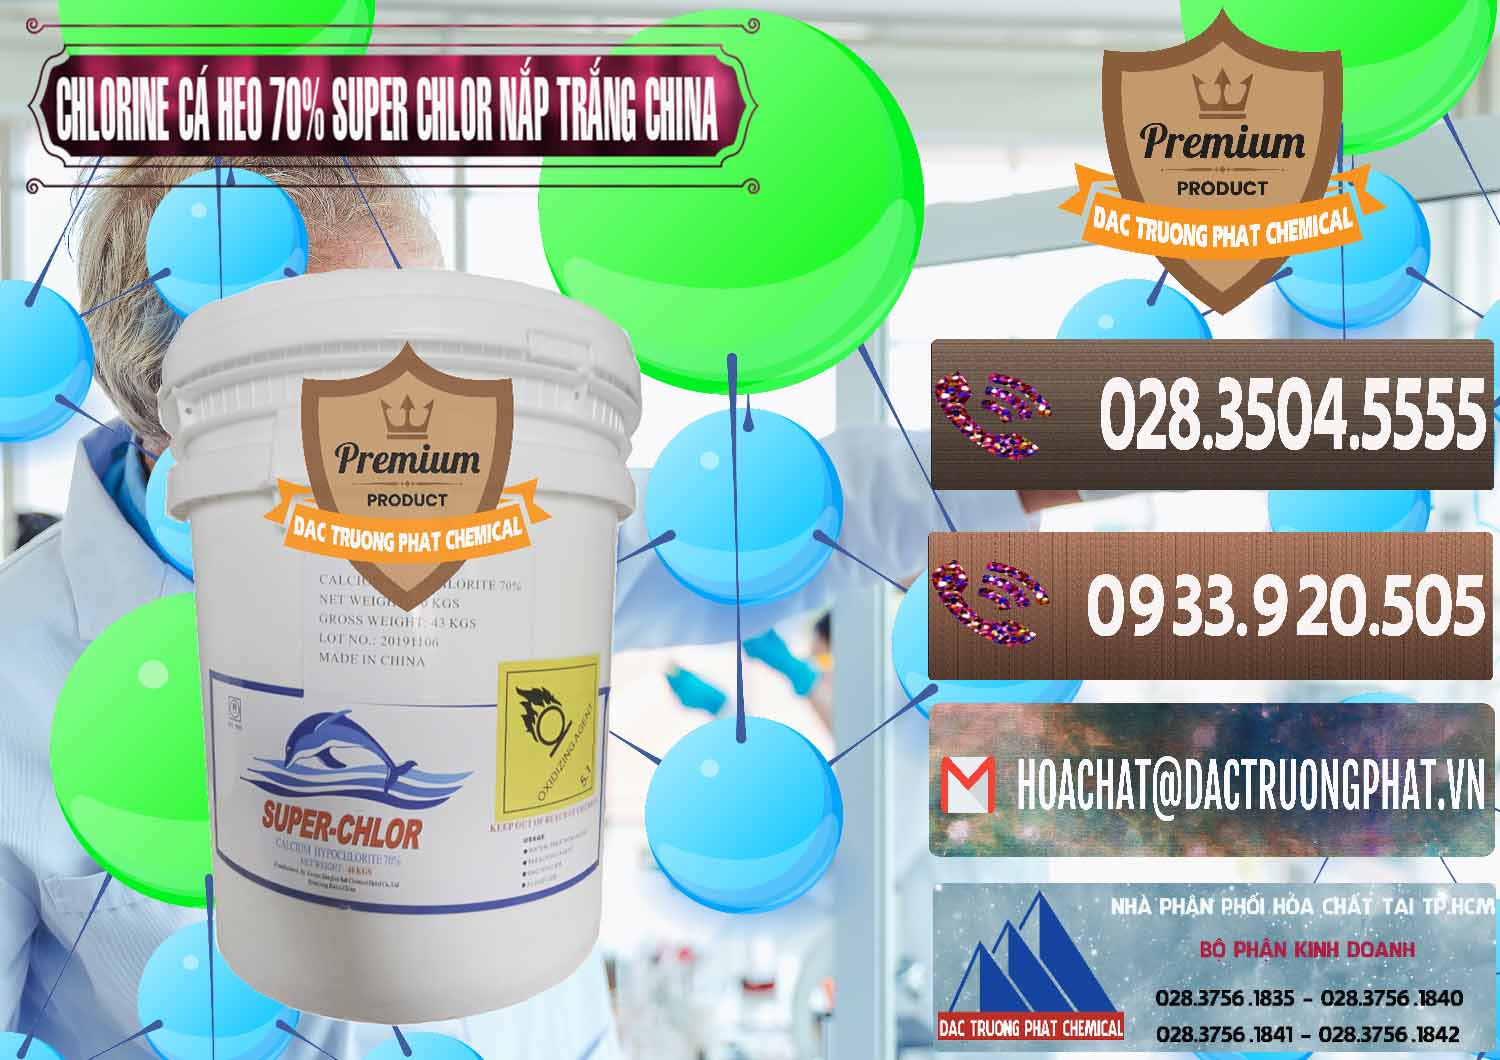 Đơn vị cung cấp và bán Clorin - Chlorine Cá Heo 70% Super Chlor Nắp Trắng Trung Quốc China - 0240 - Cung cấp và bán hóa chất tại TP.HCM - hoachatviet.net